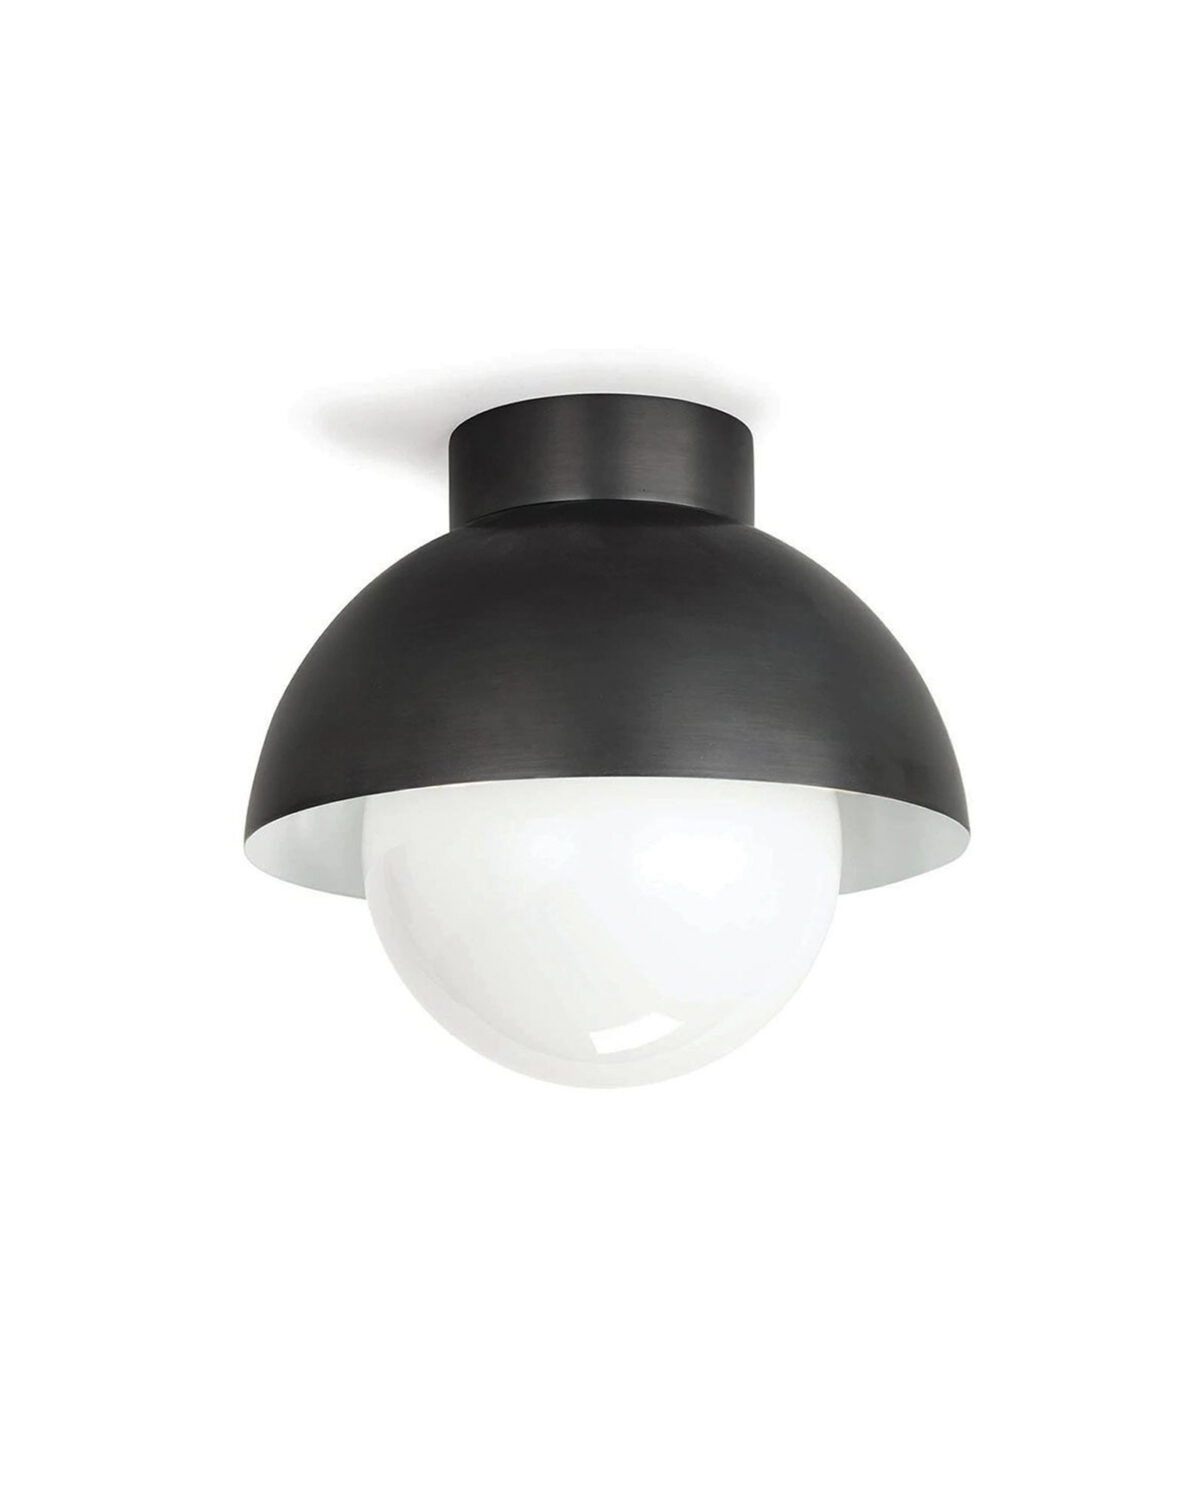 Потолочный светильник "Бомон" с черной чашей куполообразной формы со встроенным стеклянным шаром белого цвета внутри.